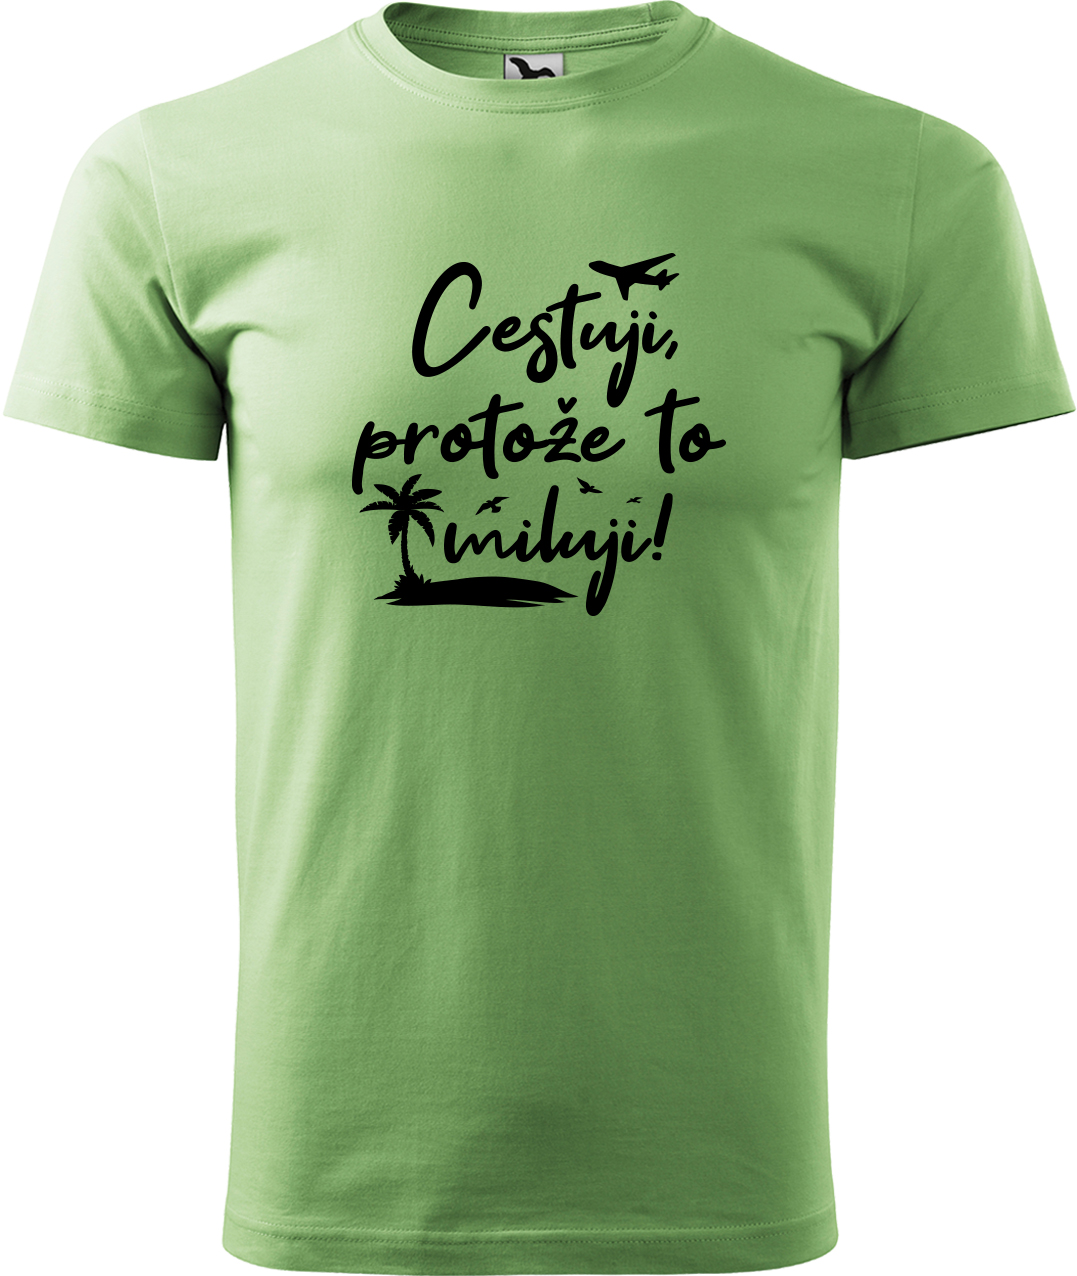 Pánské cestovatelské tričko - Cestuji, protože to miluji! Velikost: M, Barva: Trávově zelená (39), Střih: pánský